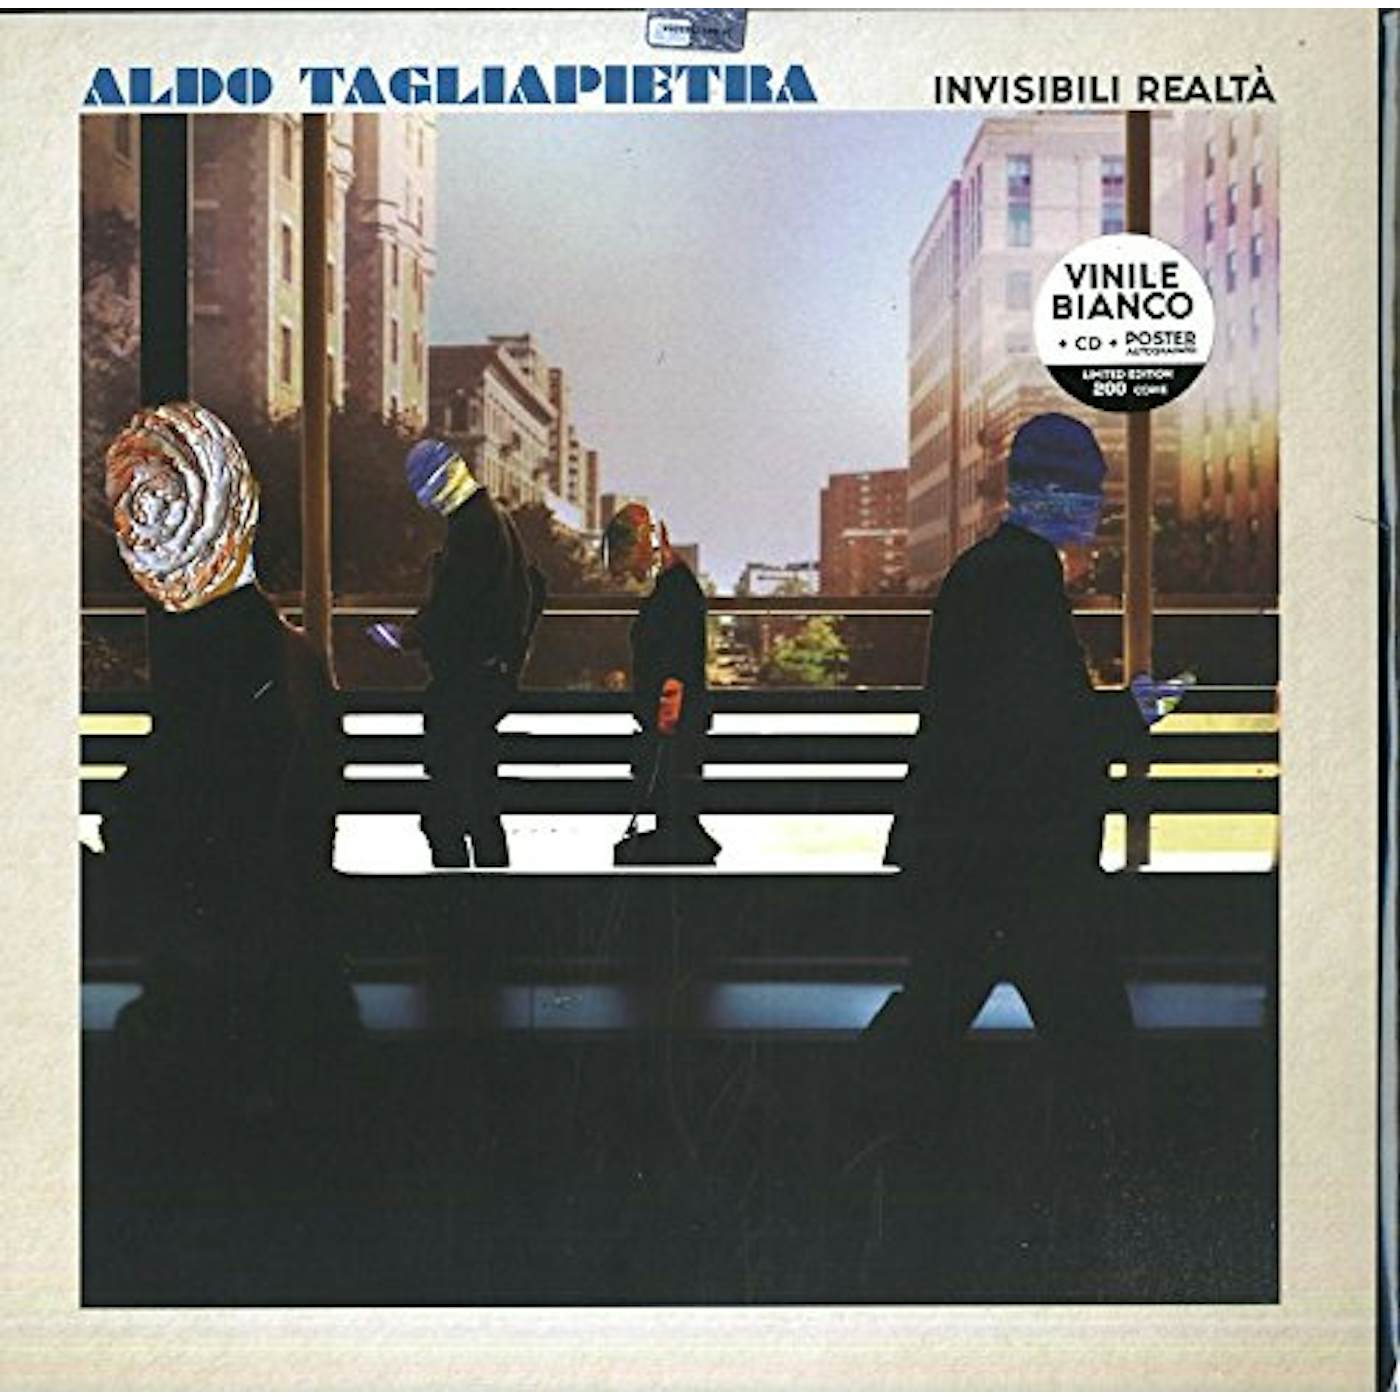 Aldo Tagliapietra INVISIBILI REALTA Vinyl Record